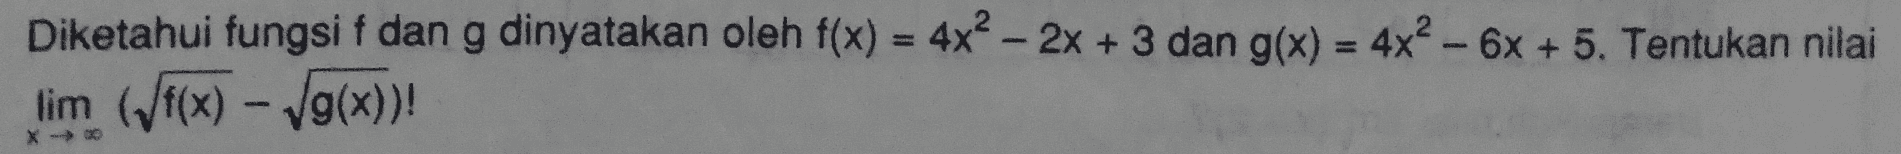 Diketahui fungsi f dan g dinyatakan oleh f(x) = 4x2 - 2x + 3 dan g(x) = 4x2 - 6x + 5. Tentukan nilai lim (f(x) - Vg(x))! X- 